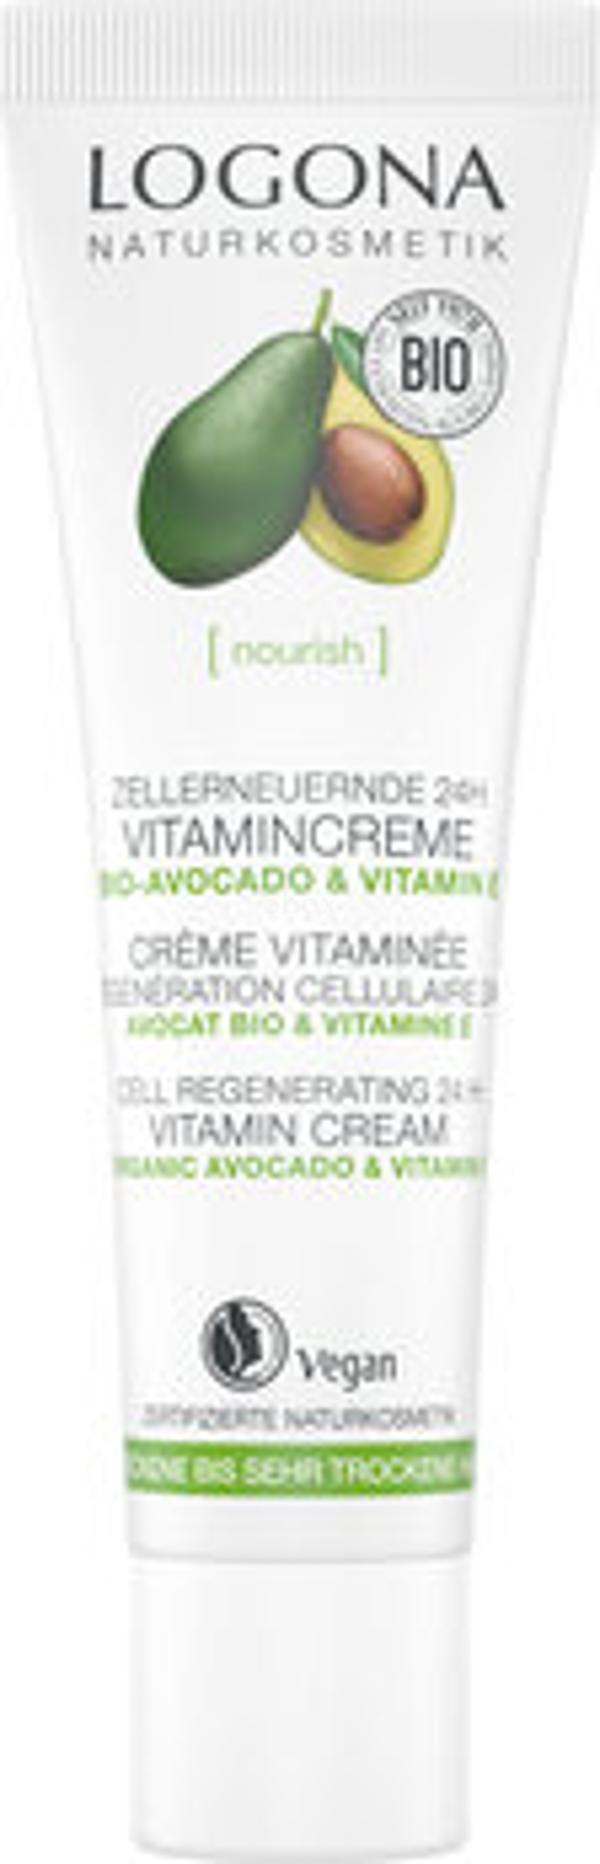 Produktfoto zu NOURISH Vitamincreme Avocado &